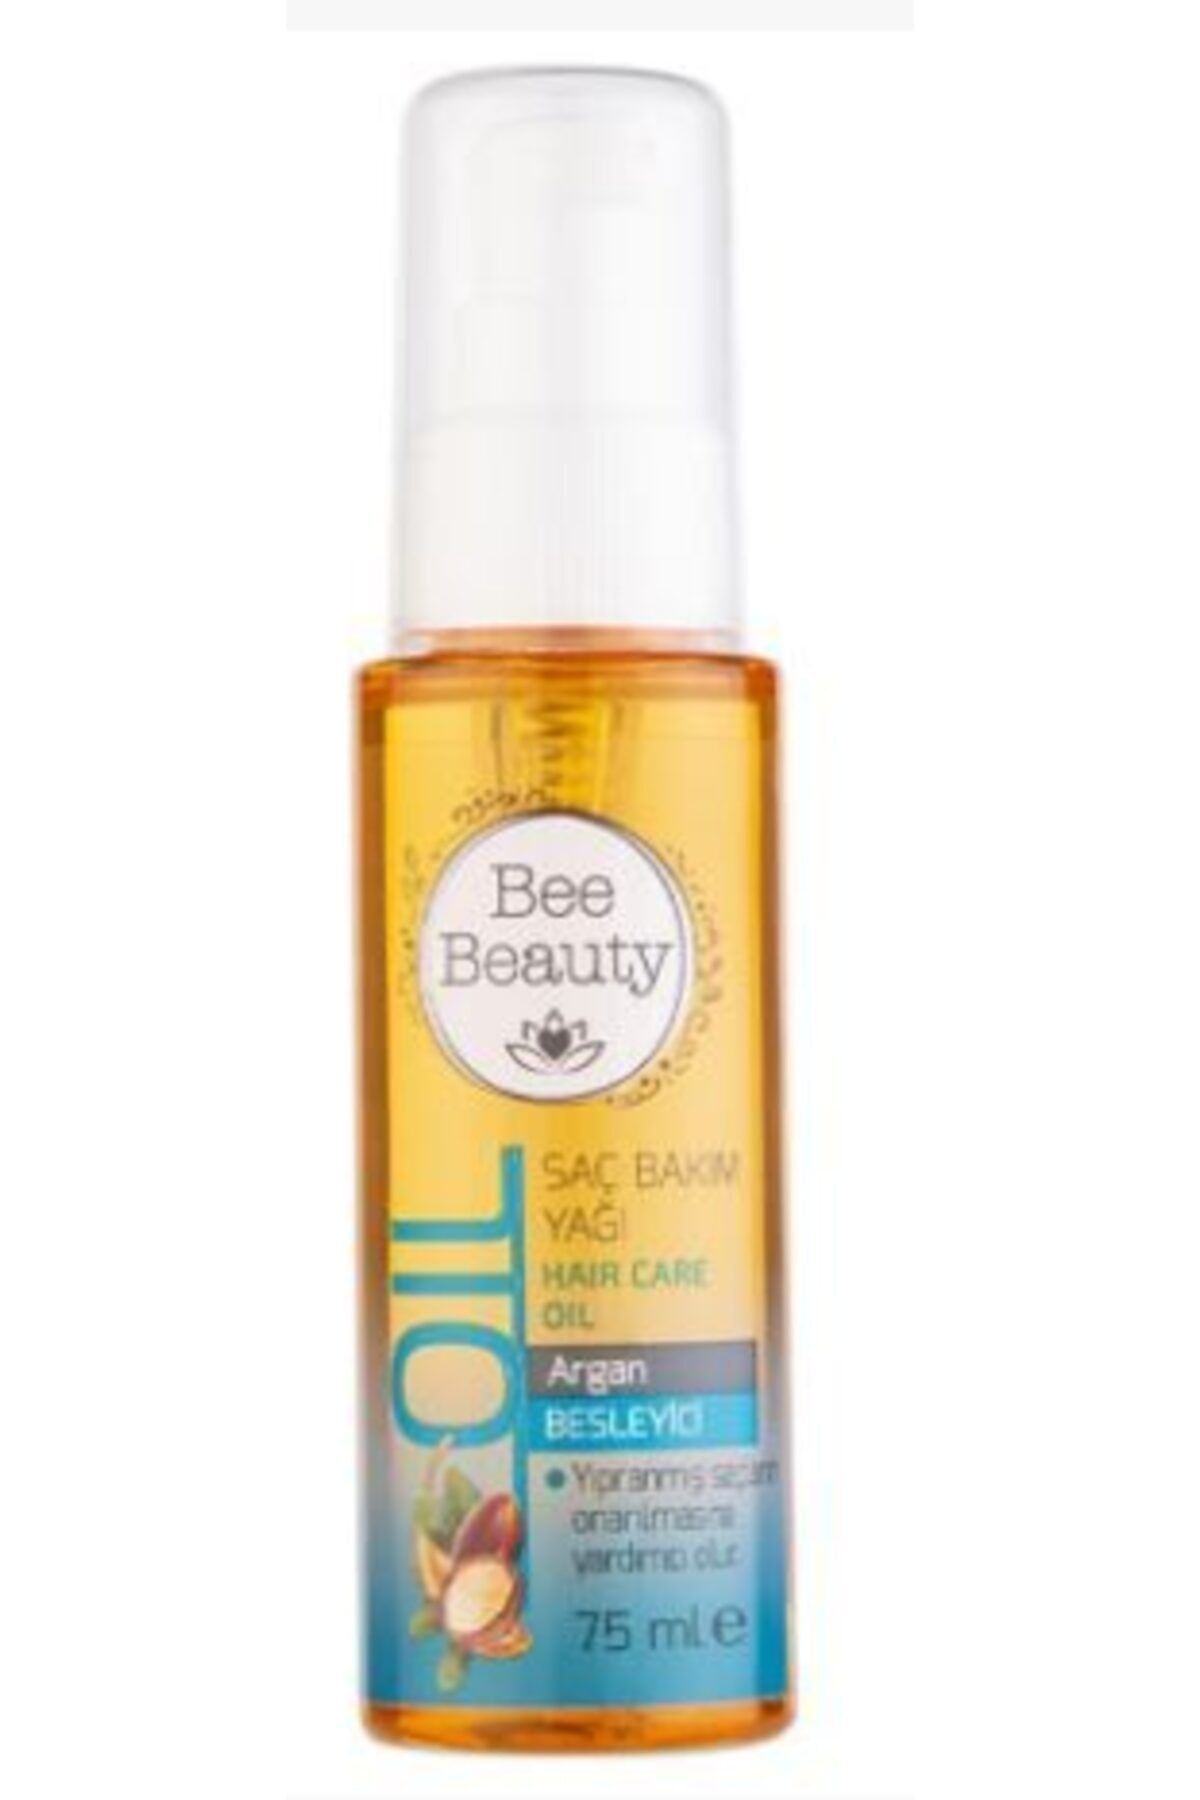 Bee Beauty Argan Saç Bakım Yağı 75 ml Besleyici Yıpranmış Saçların Onarılmasına Yardımcı Olur